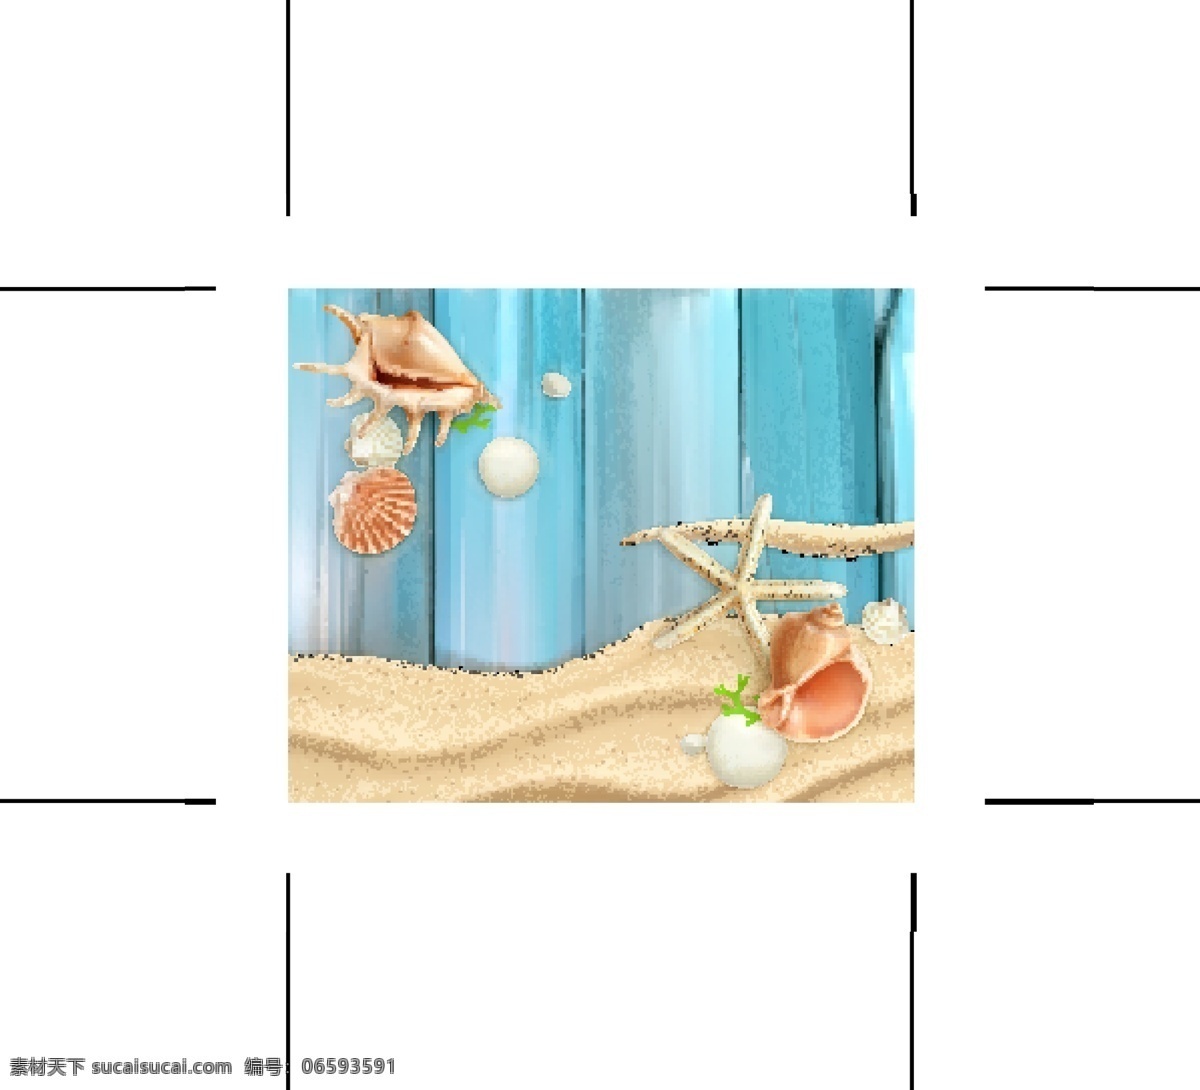 蓝色 木头 背景 沙滩 海星 矢量 水彩 海螺 海边 度假 装饰 创意 涂鸦 小清新 卡通 填充 插画 海报 广告 包装 印刷 夏天 高清